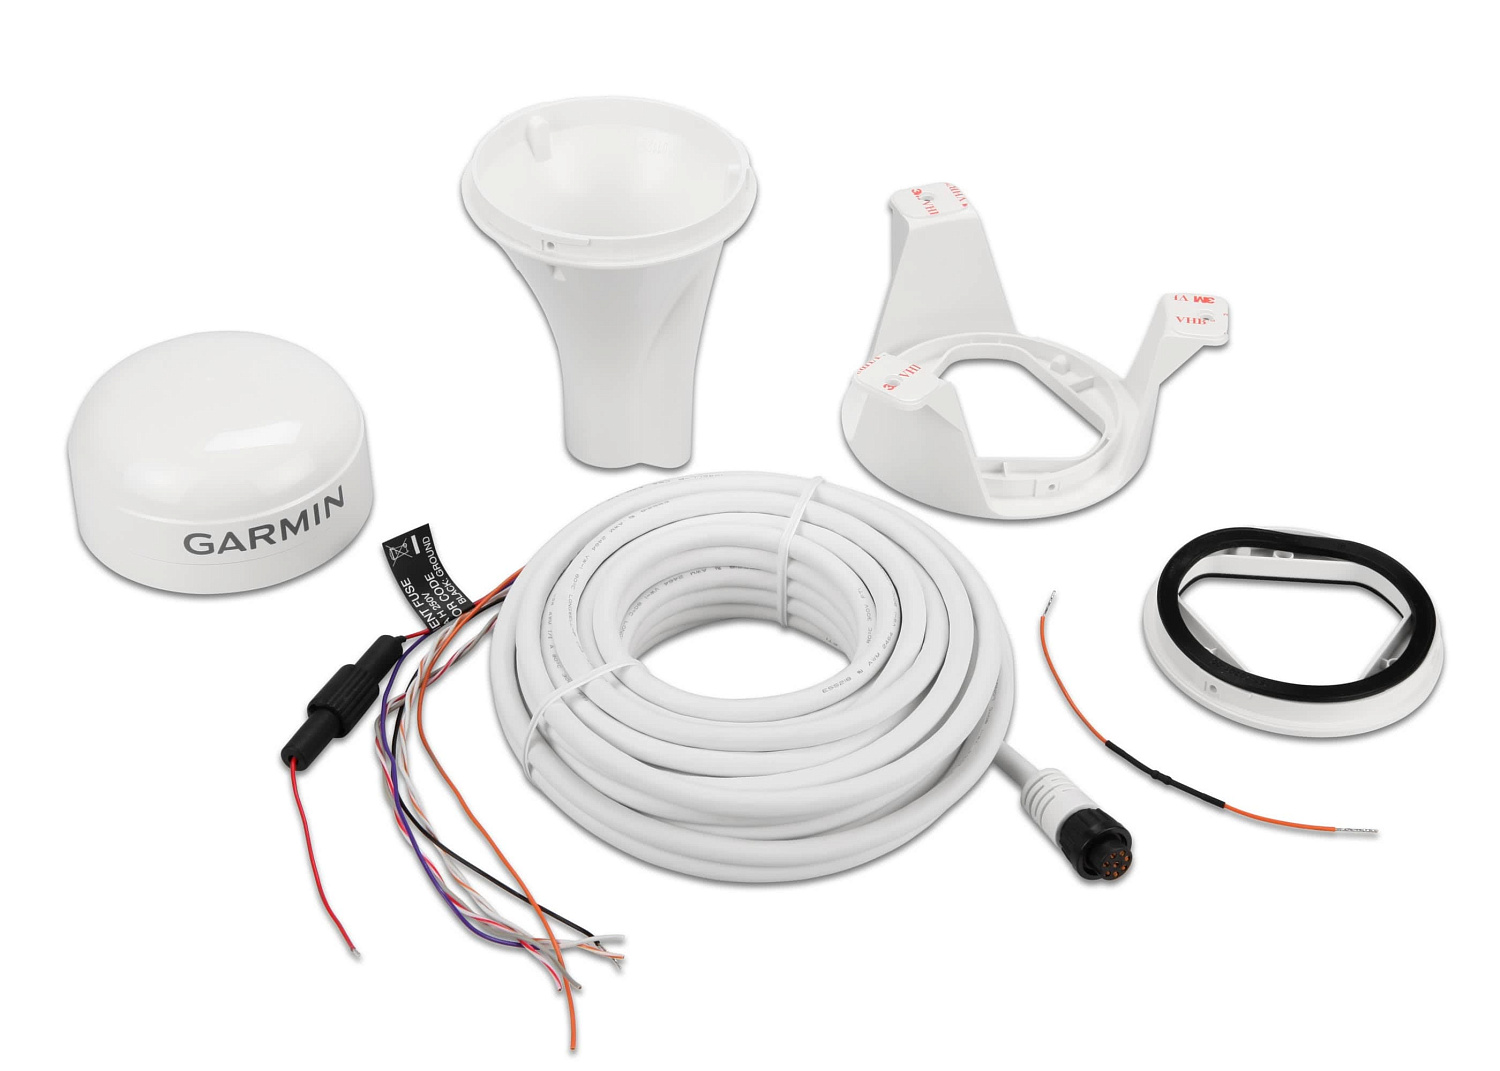 GARMIN GPS24x HVS / NMEA0183 GPS Antenna